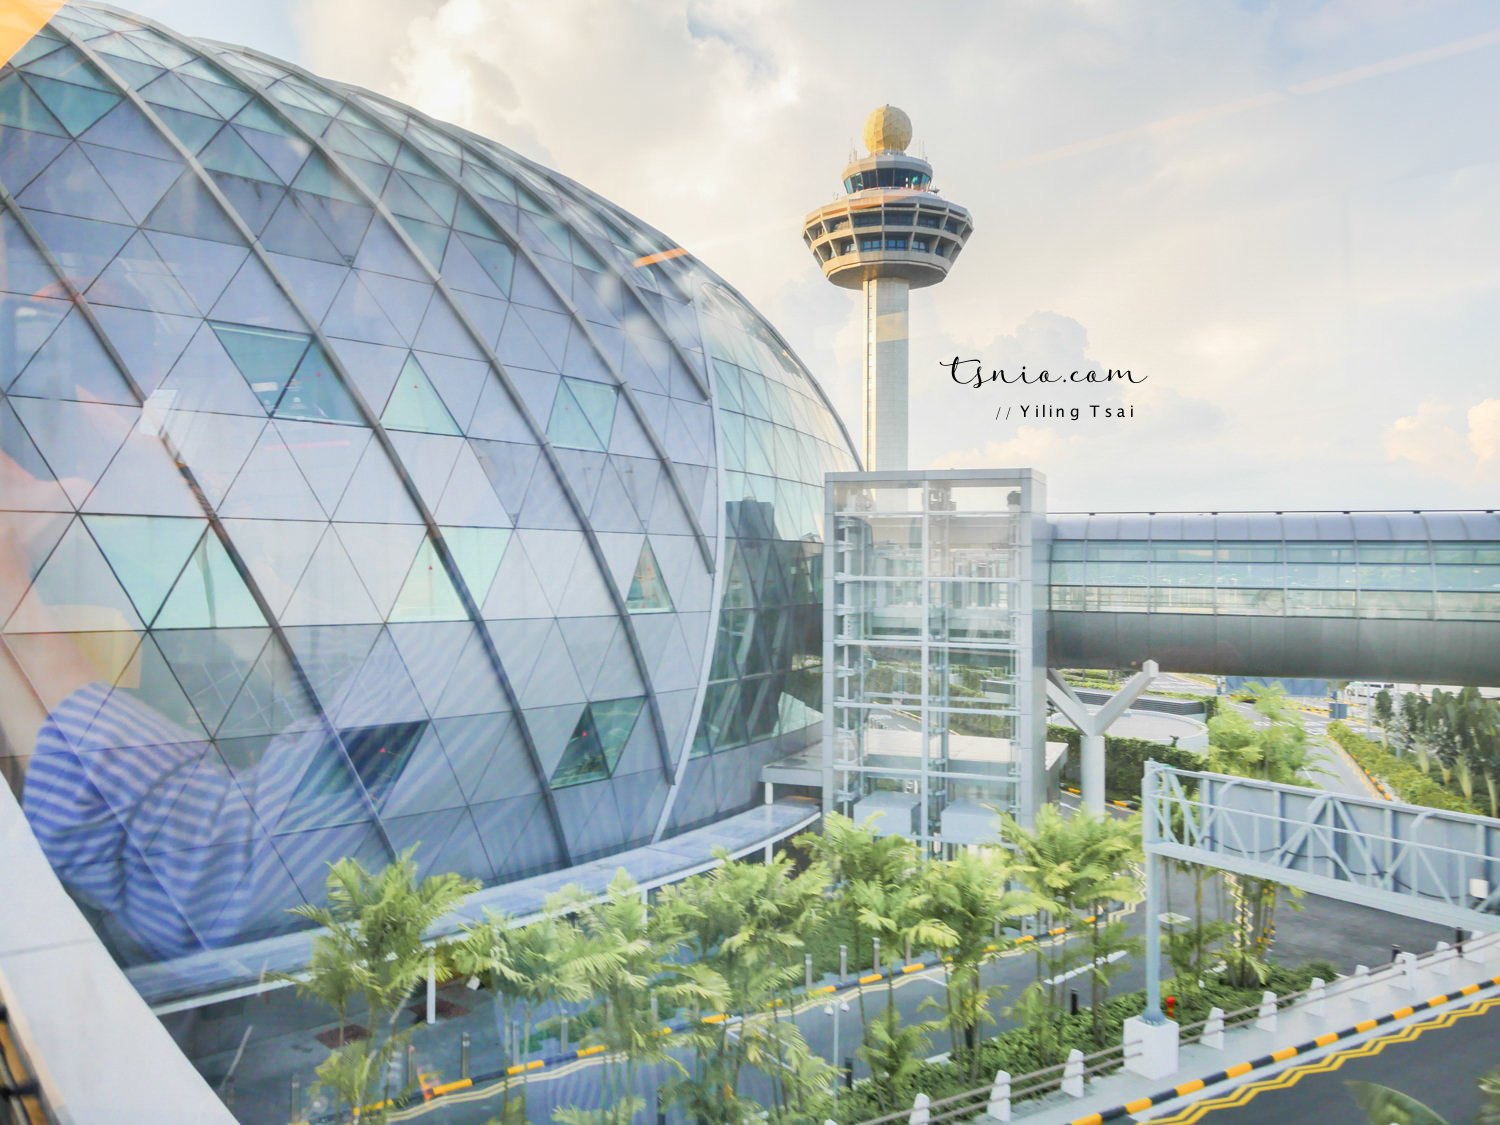 酷航柏林航線 新加坡轉機 酷航歐洲搭乘心得分享